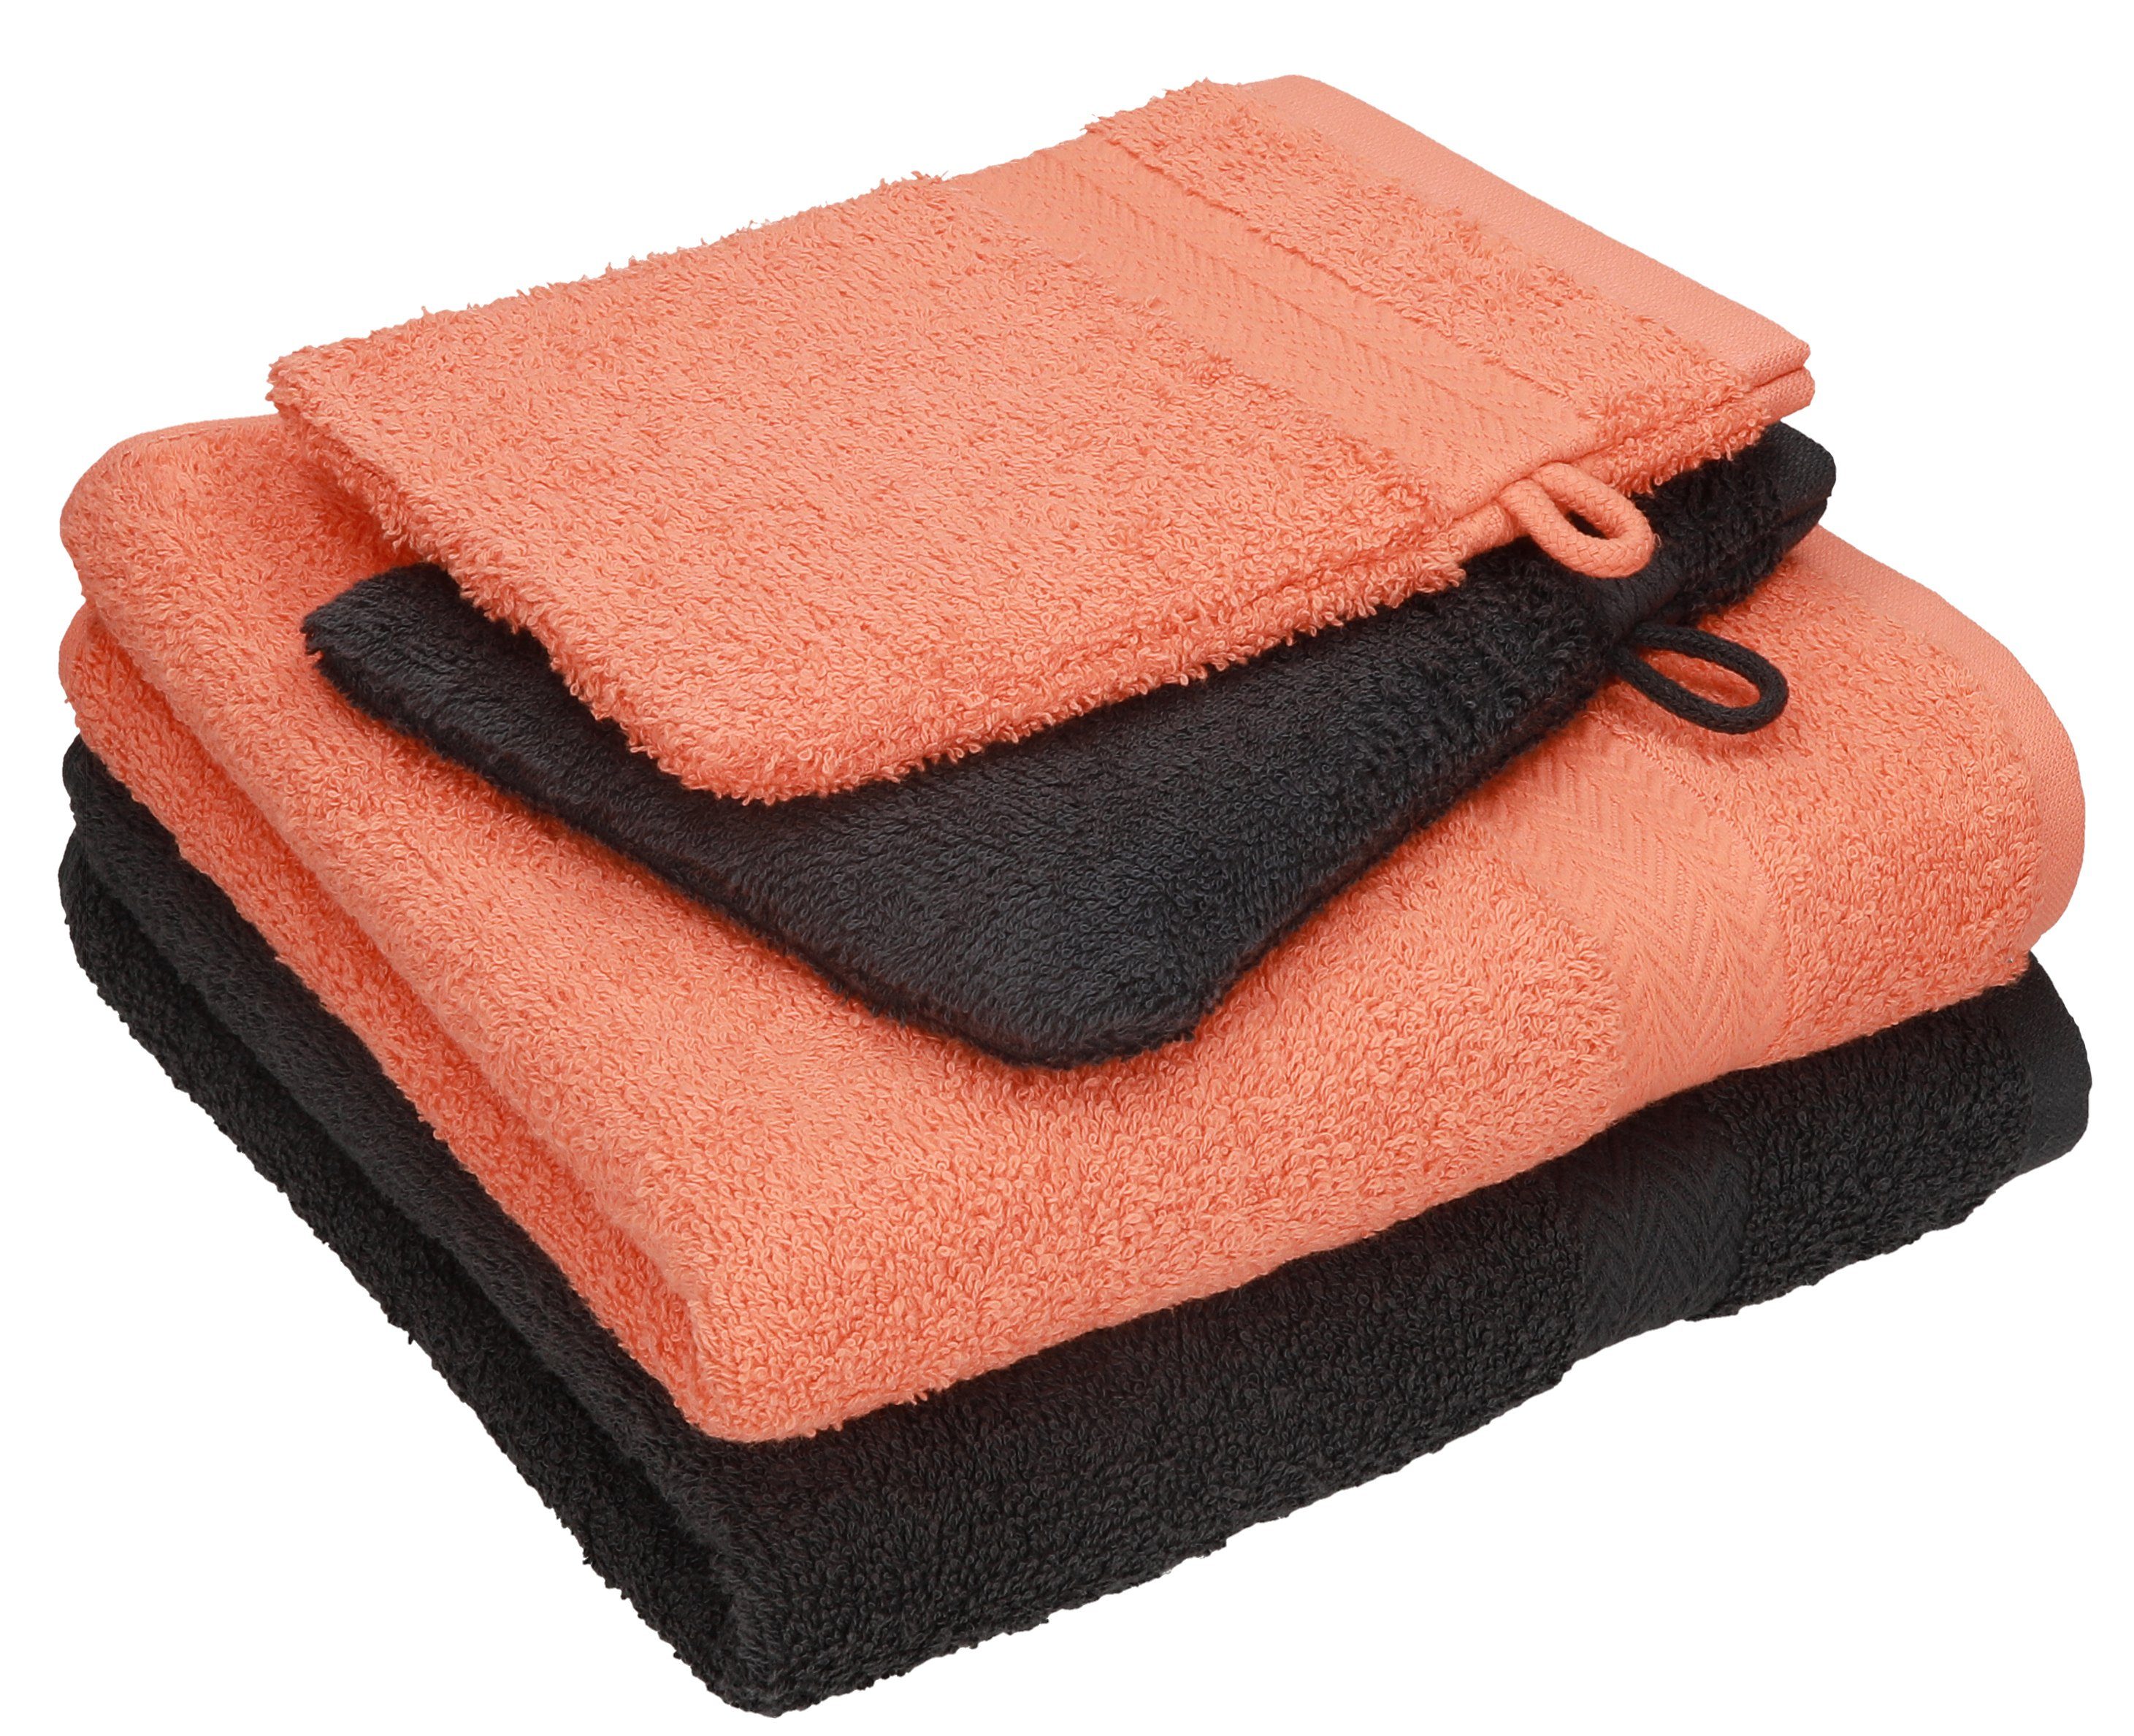 Betz Handtuch Set 4 tlg. Handtuch Set HAPPY Pack 100% Baumwolle 2 Handtücher 2 Waschhandschuhe, 100% Baumwolle graphit grau - orange